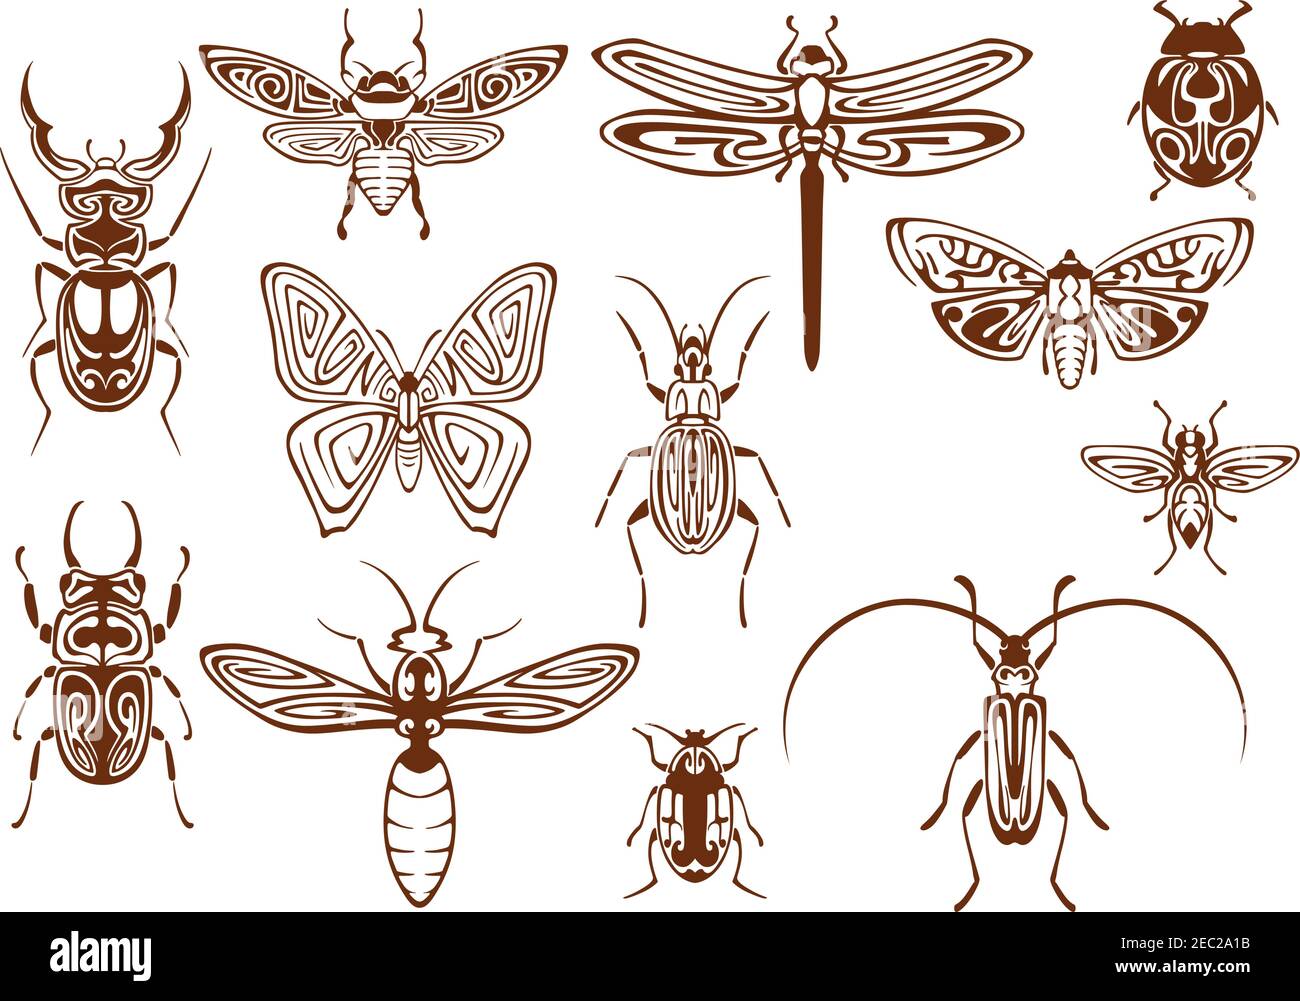 Farfalla tribale marrone, ape, falce, libellula, vespe, coccinella, scarabeo e scarabei, bumblebee, lucciole e insetti scudo. Insetti decorativi, adornati Illustrazione Vettoriale